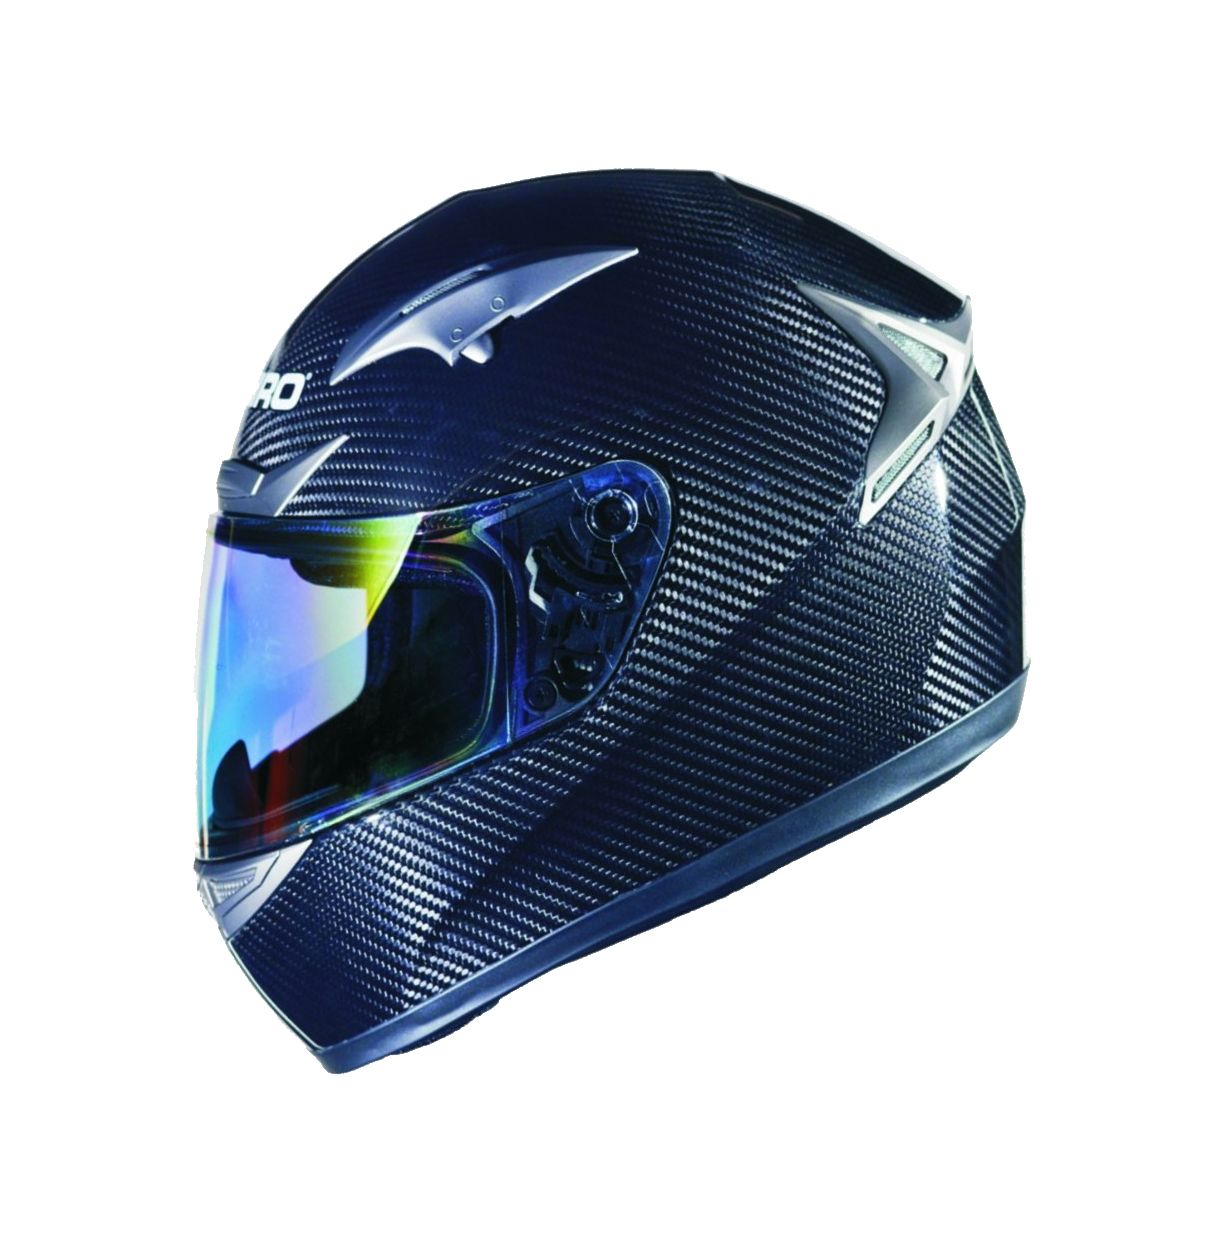 Motorcycle helmet PNG image, moto helmet    图片编号:9651